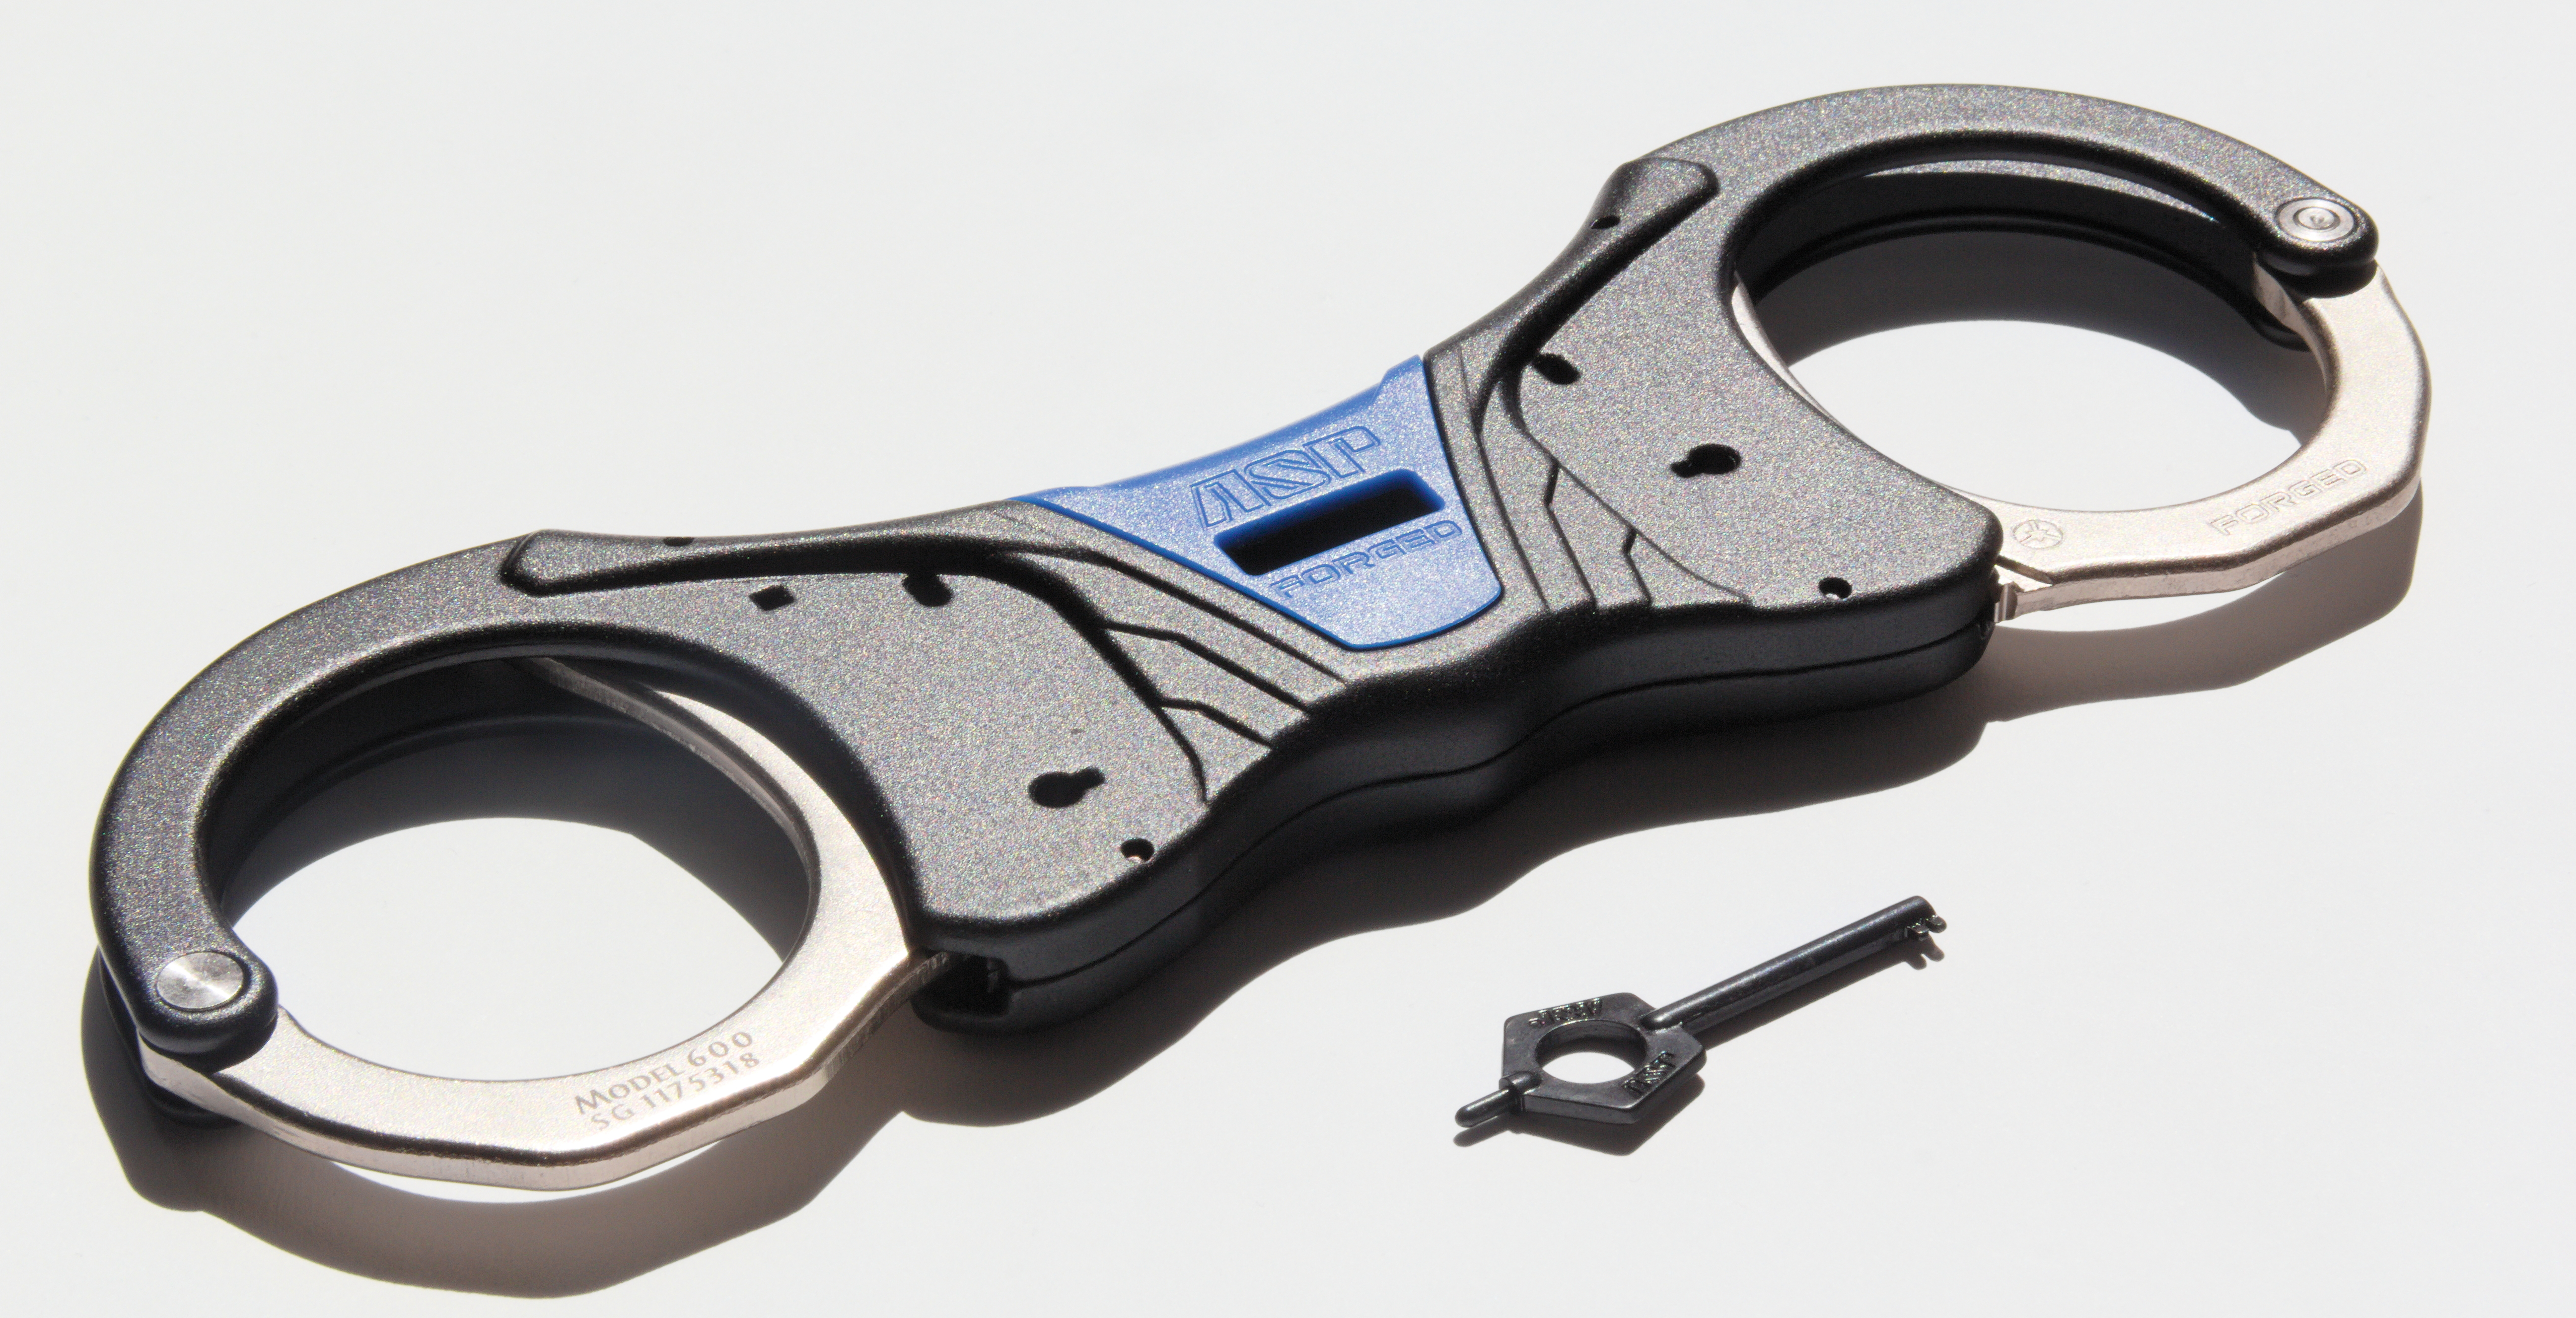 ASP Identifier Steel Rigid Ultra Cuffs Blue (2 Pawl) - 46021 / Model 600 Blau 